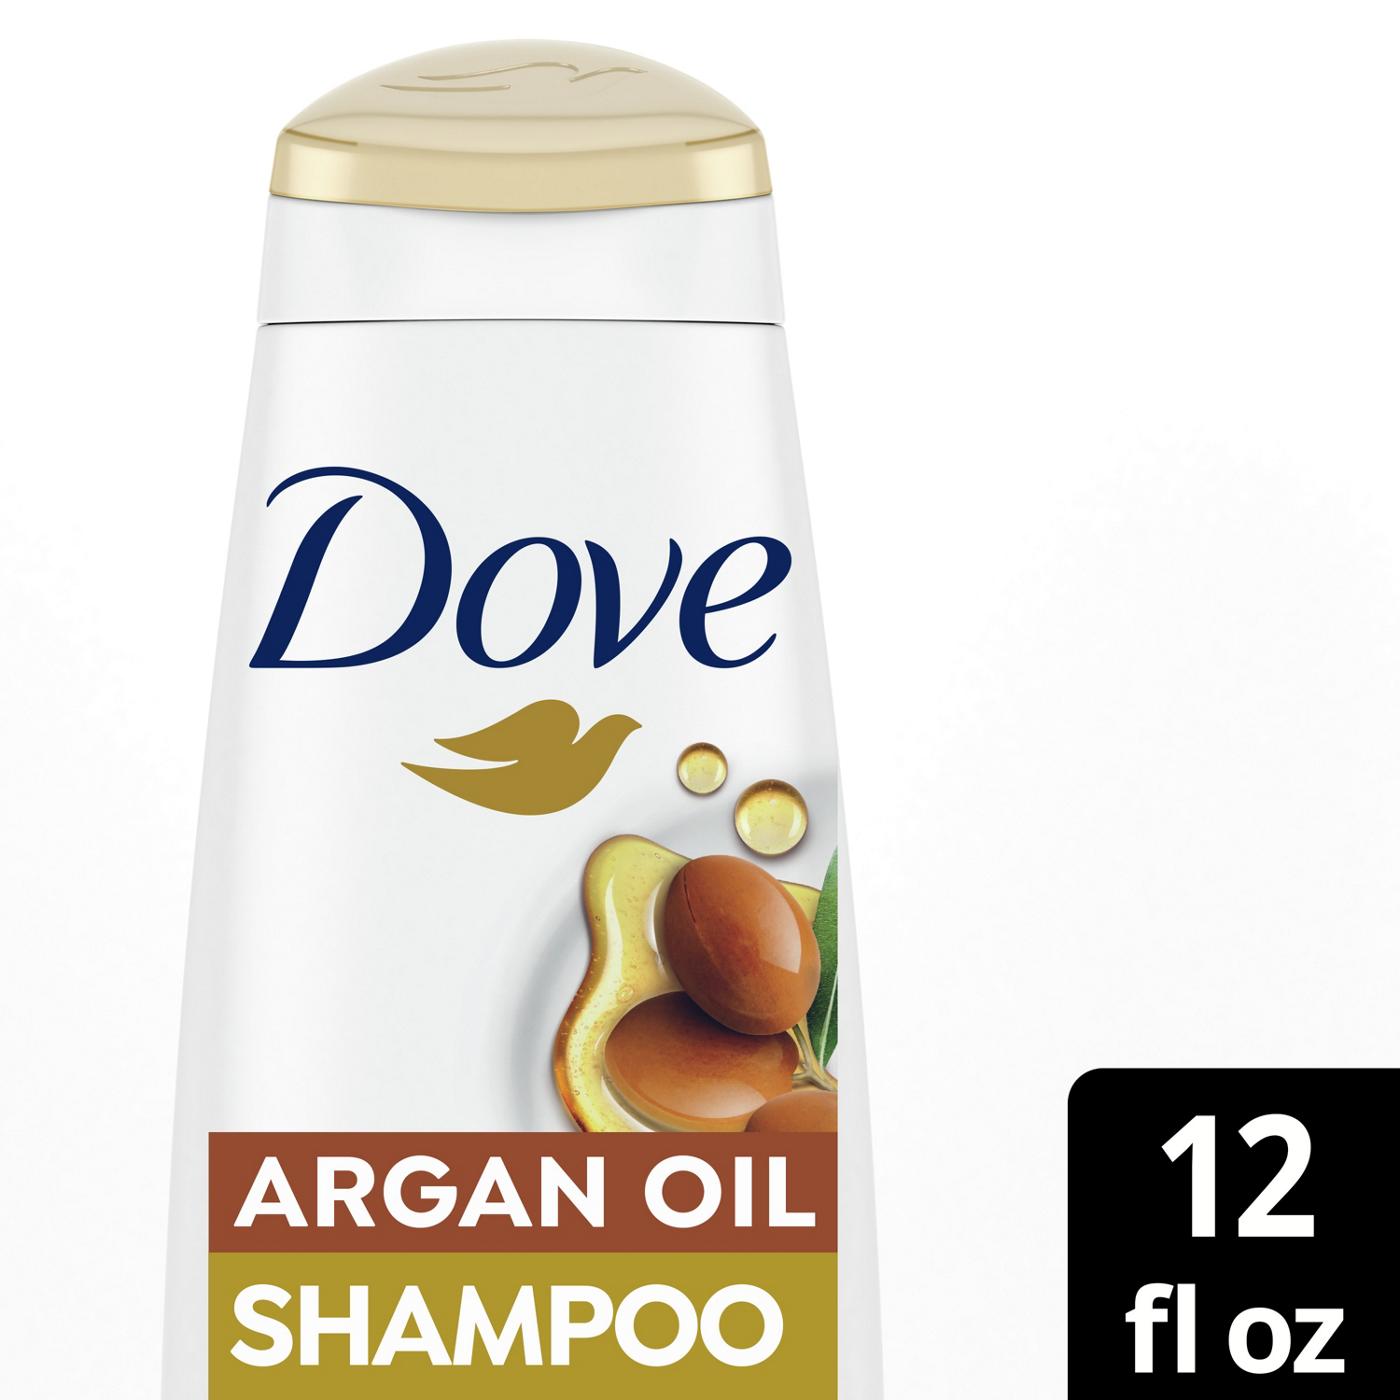 Dove Argan Oil & Damage Repair Shampoo; image 2 of 3